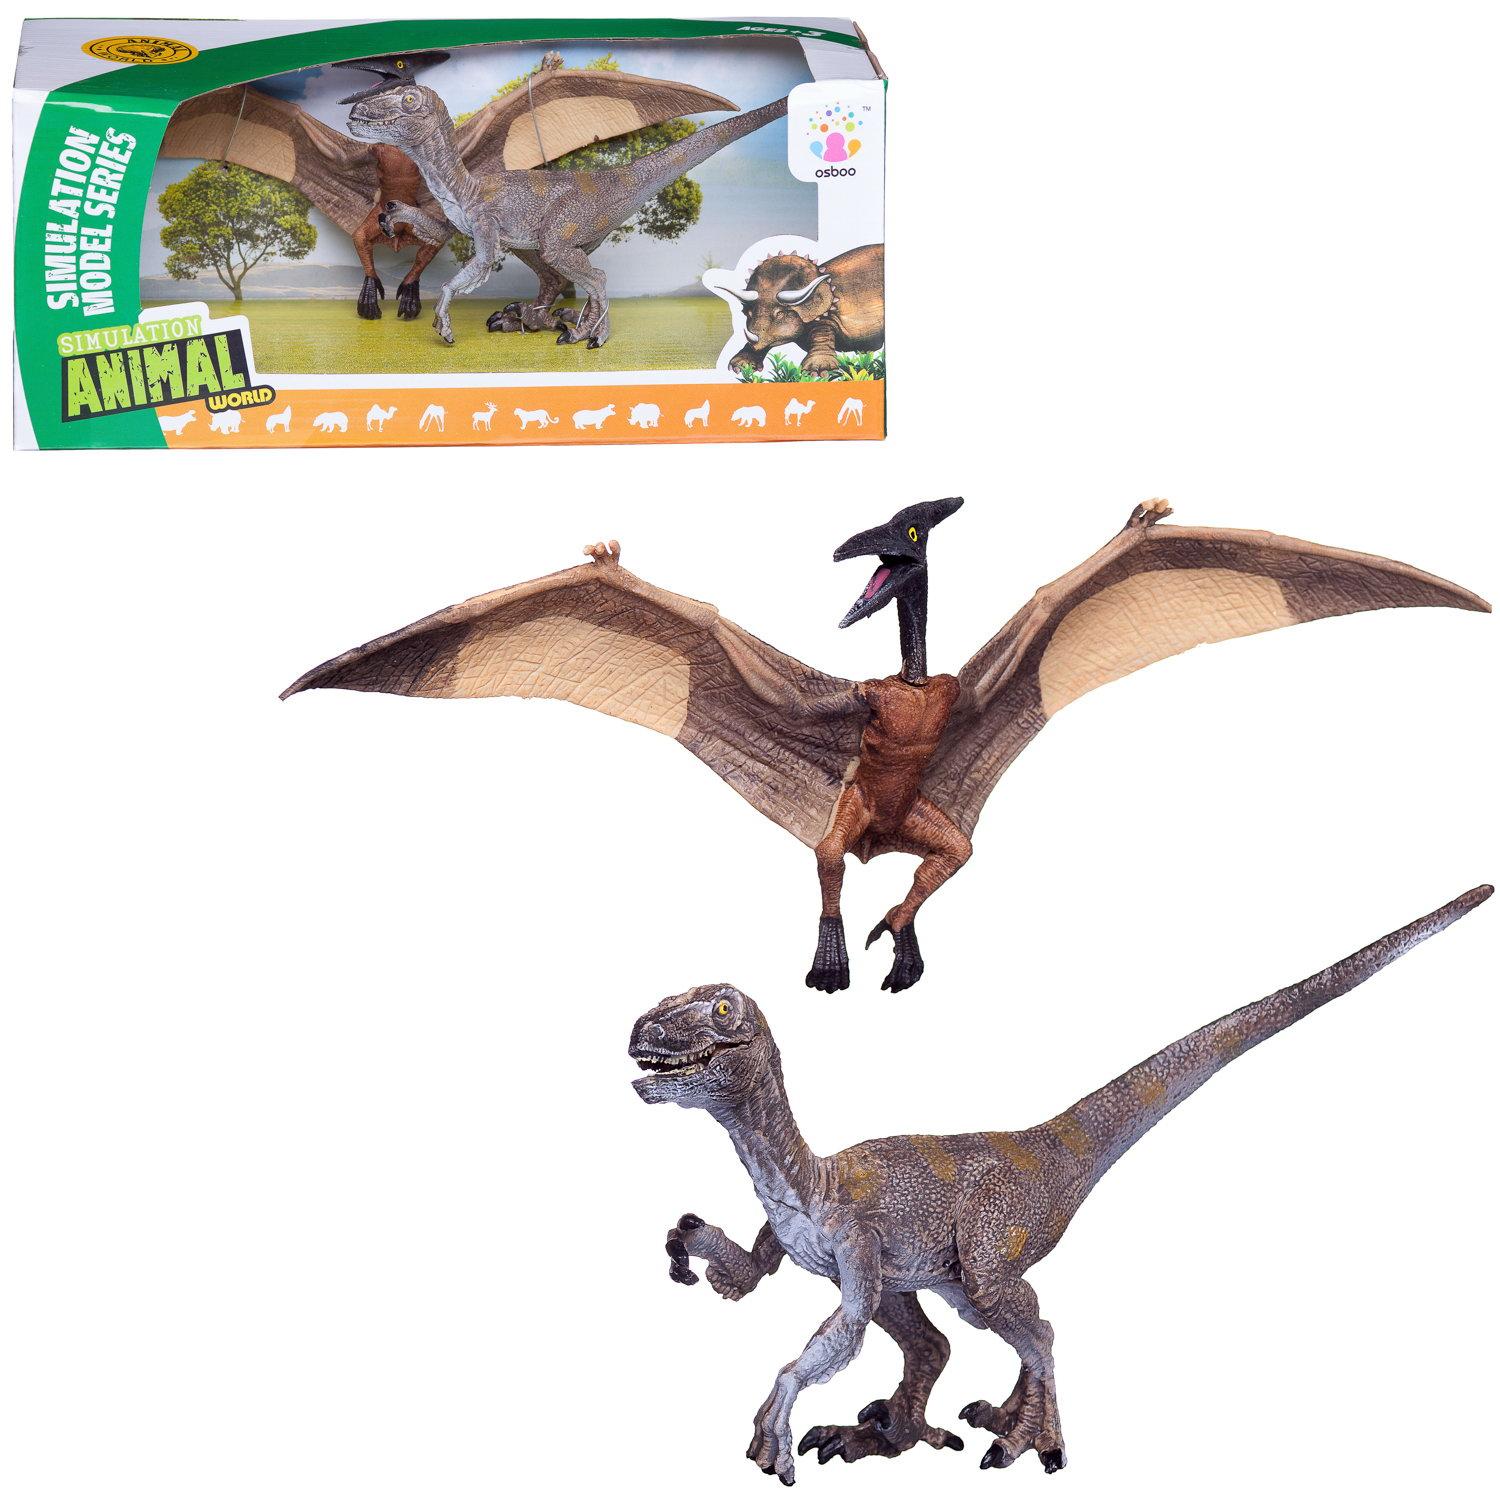 Купить WA-14587 набор1, Игровой набор Junfa В мире динозавров; серия 2 набор 1; WA-14587/набор1, Junfa toys,